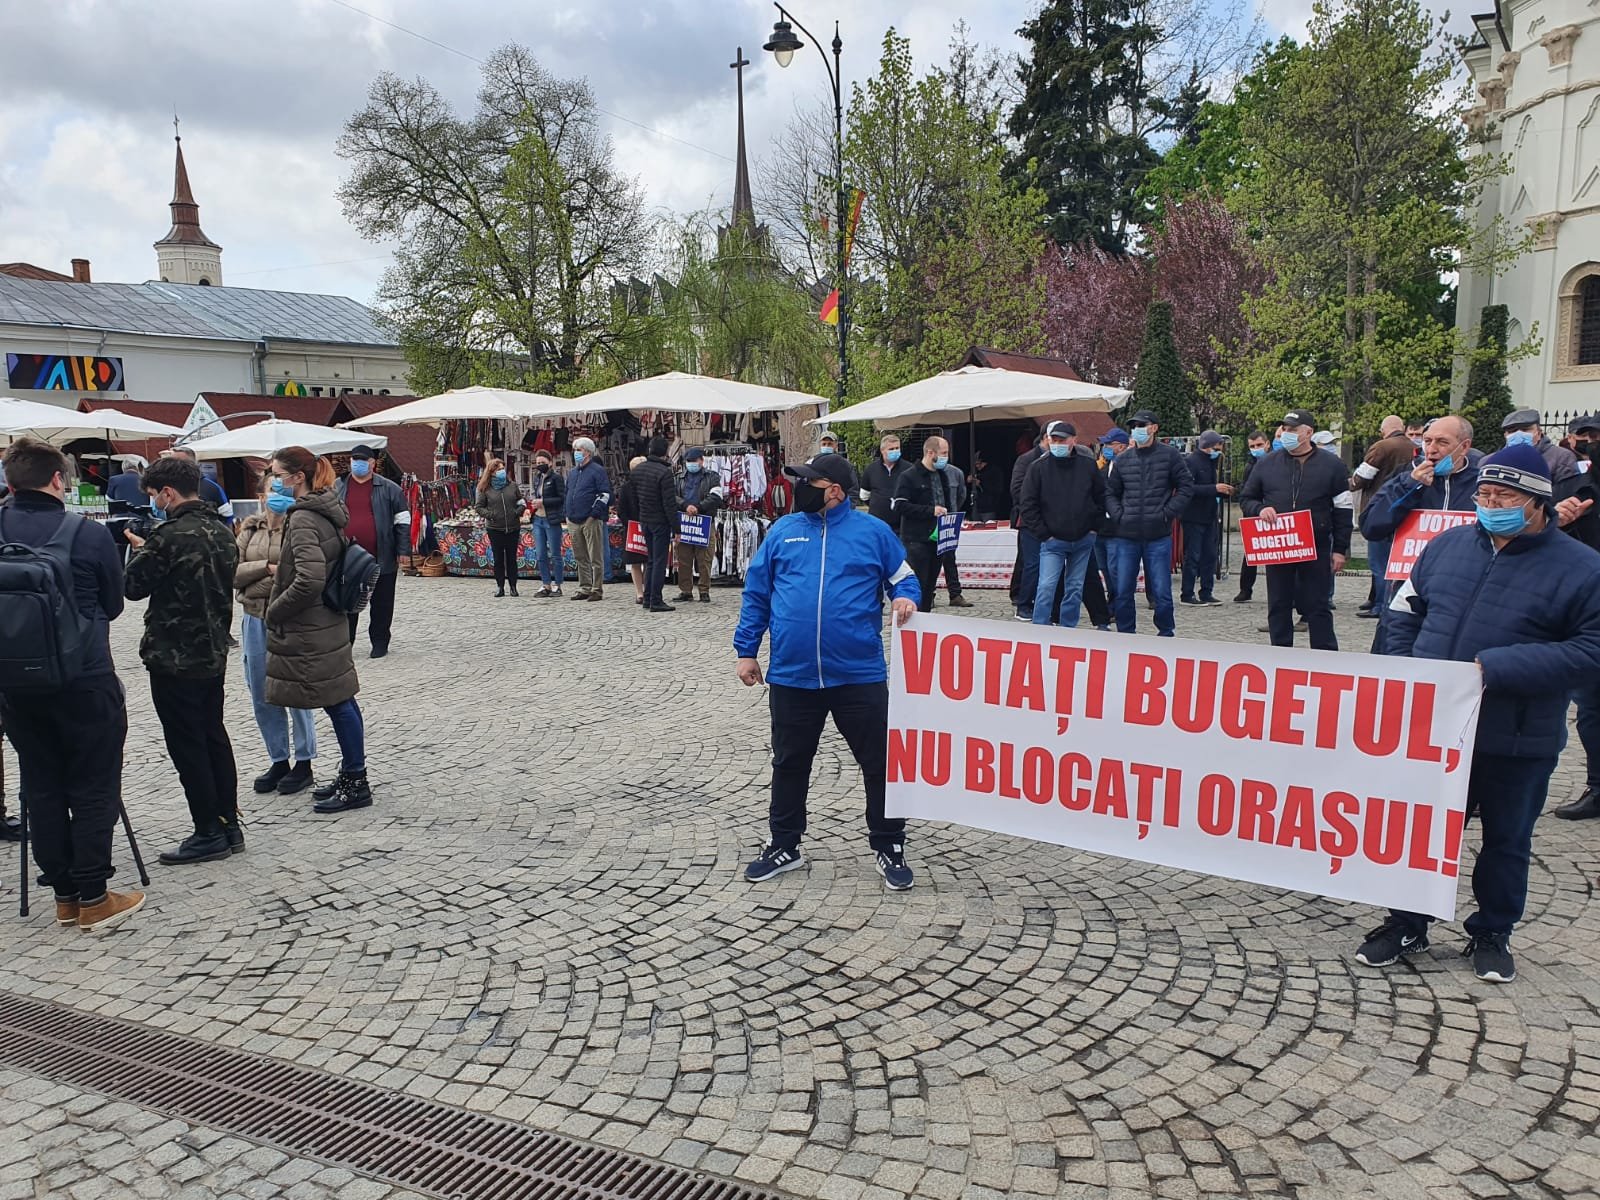  IMAGINI: Protest în fața Primăriei Iași. Se cere votarea bugetului (UPDATE)